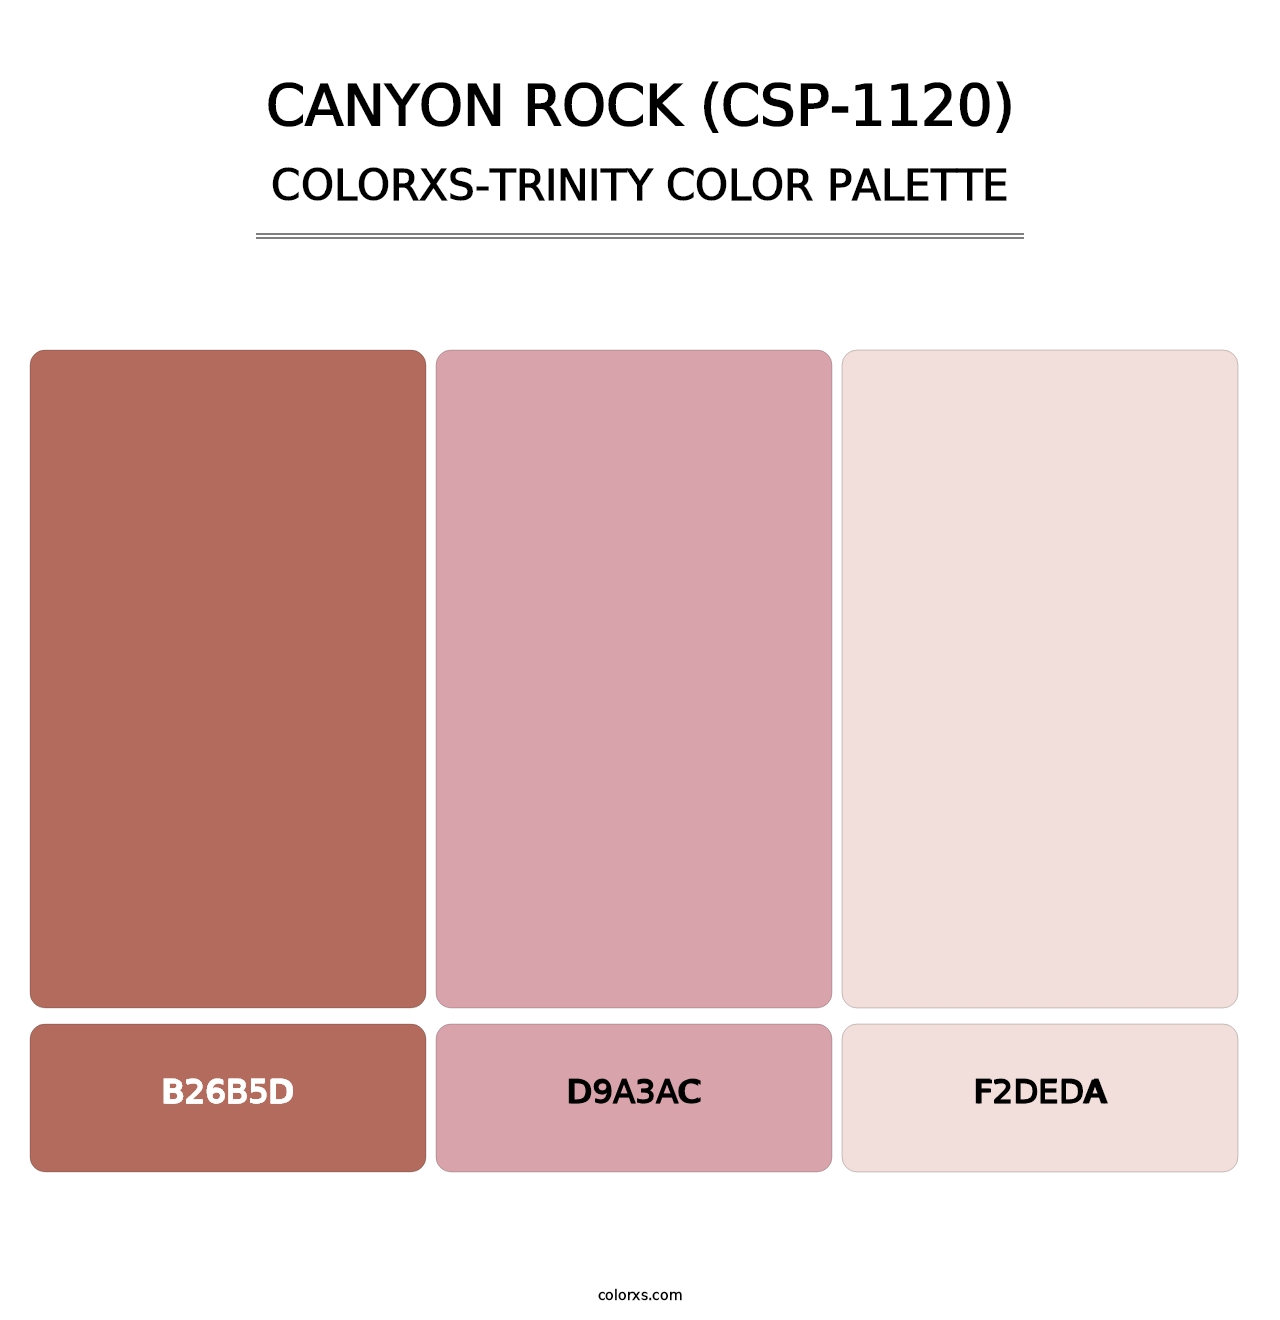 Canyon Rock (CSP-1120) - Colorxs Trinity Palette